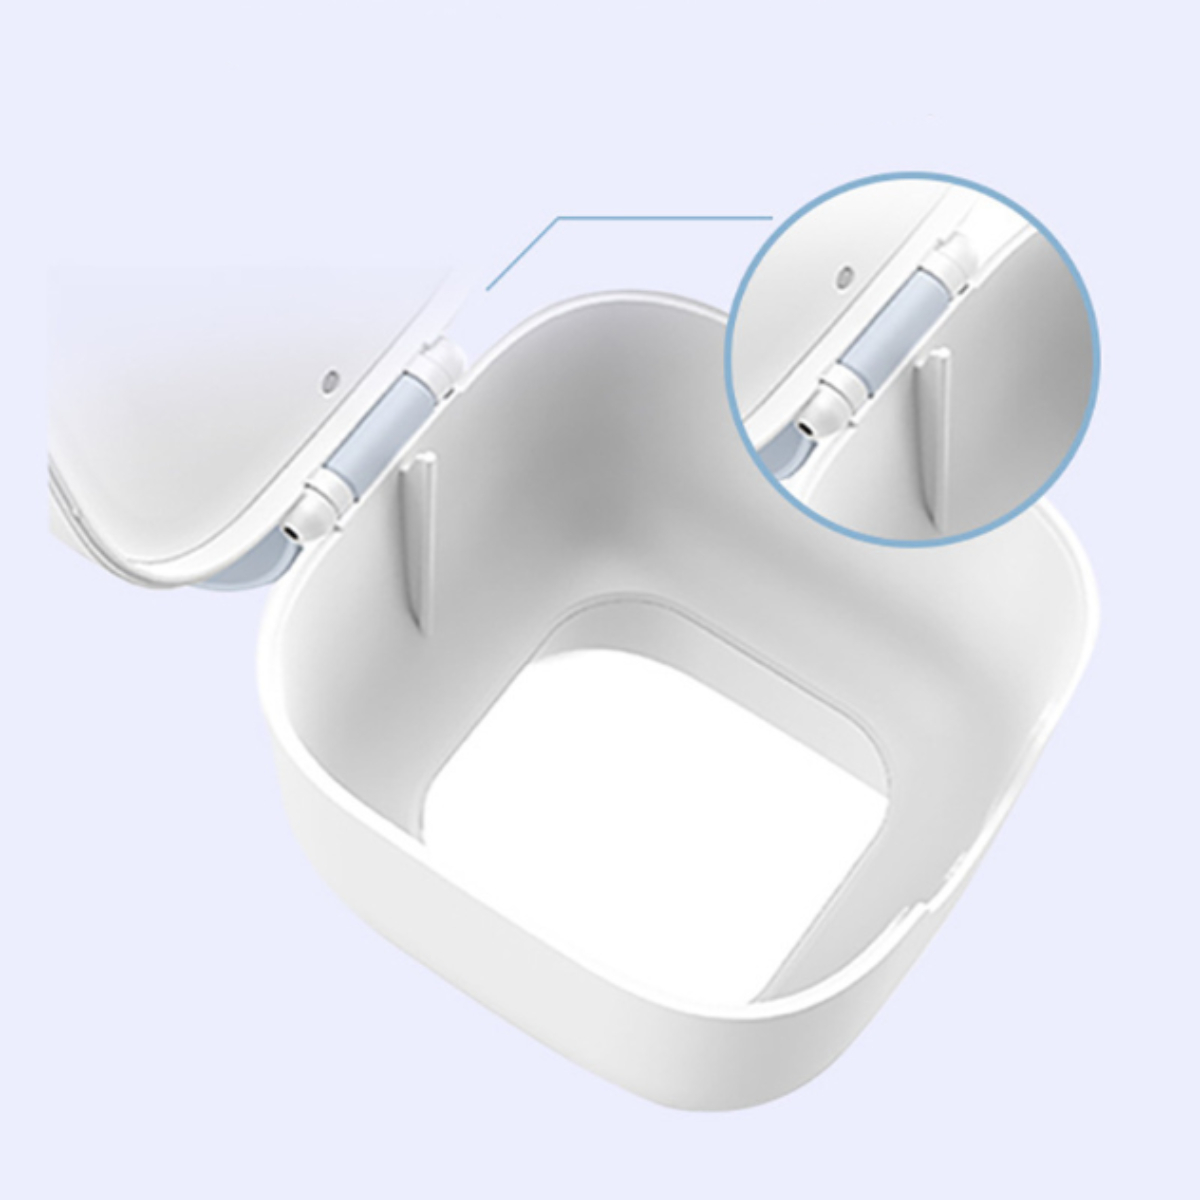 ENBAOXIN Tragbarer UV-Sterilisator - Ultraviolett-Sterilisator Desinfizieren Knopfdruck Jederzeit auf überall, Weiß und Sie